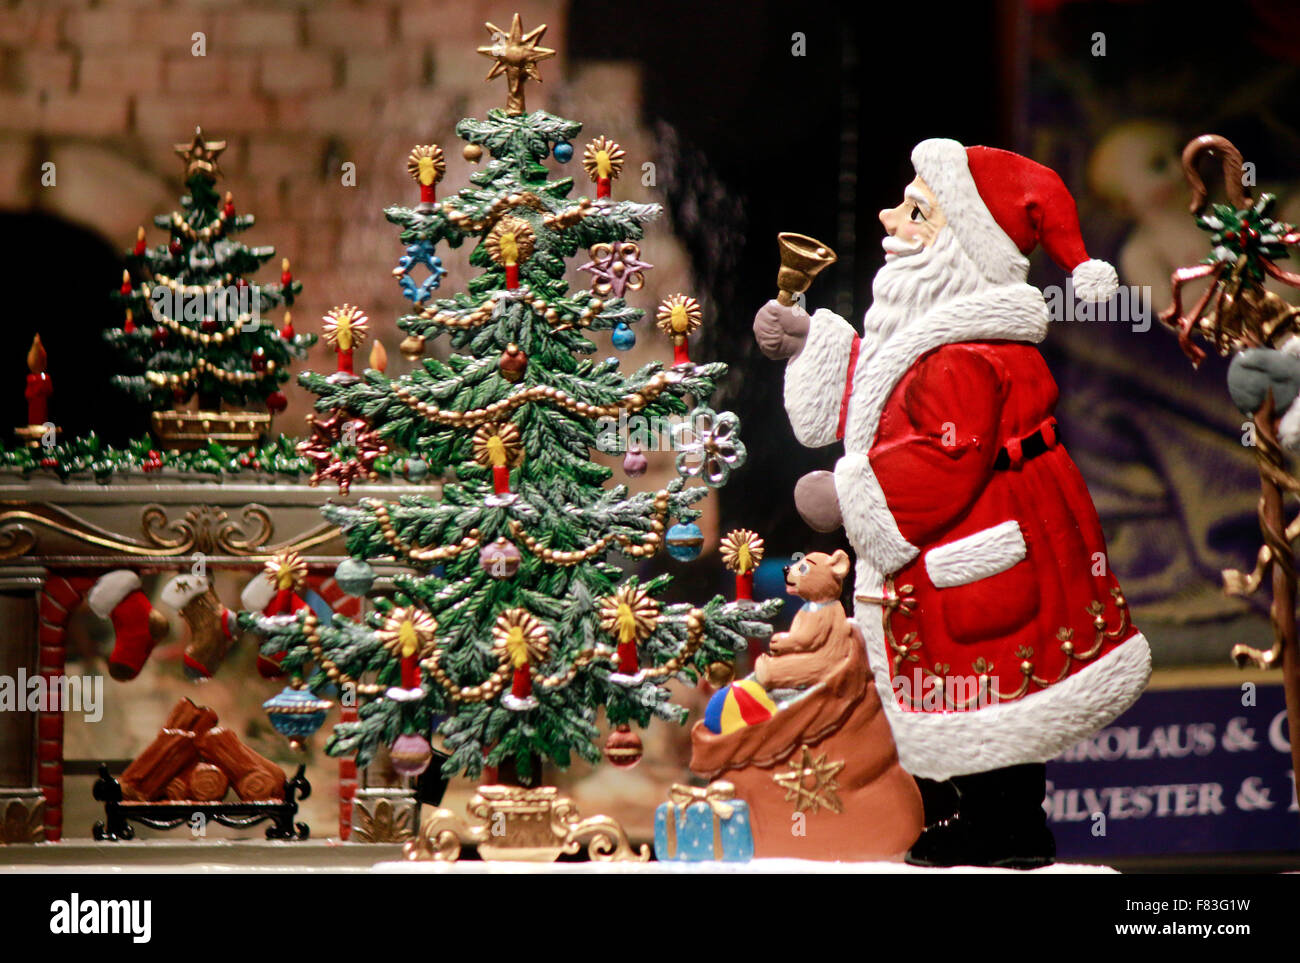 Weihnachtsmann, Kind, Schneemann, Weihnachtsbaum - Schaufensterdekoration  zu Weihnachten, Berlin Stock Photo - Alamy